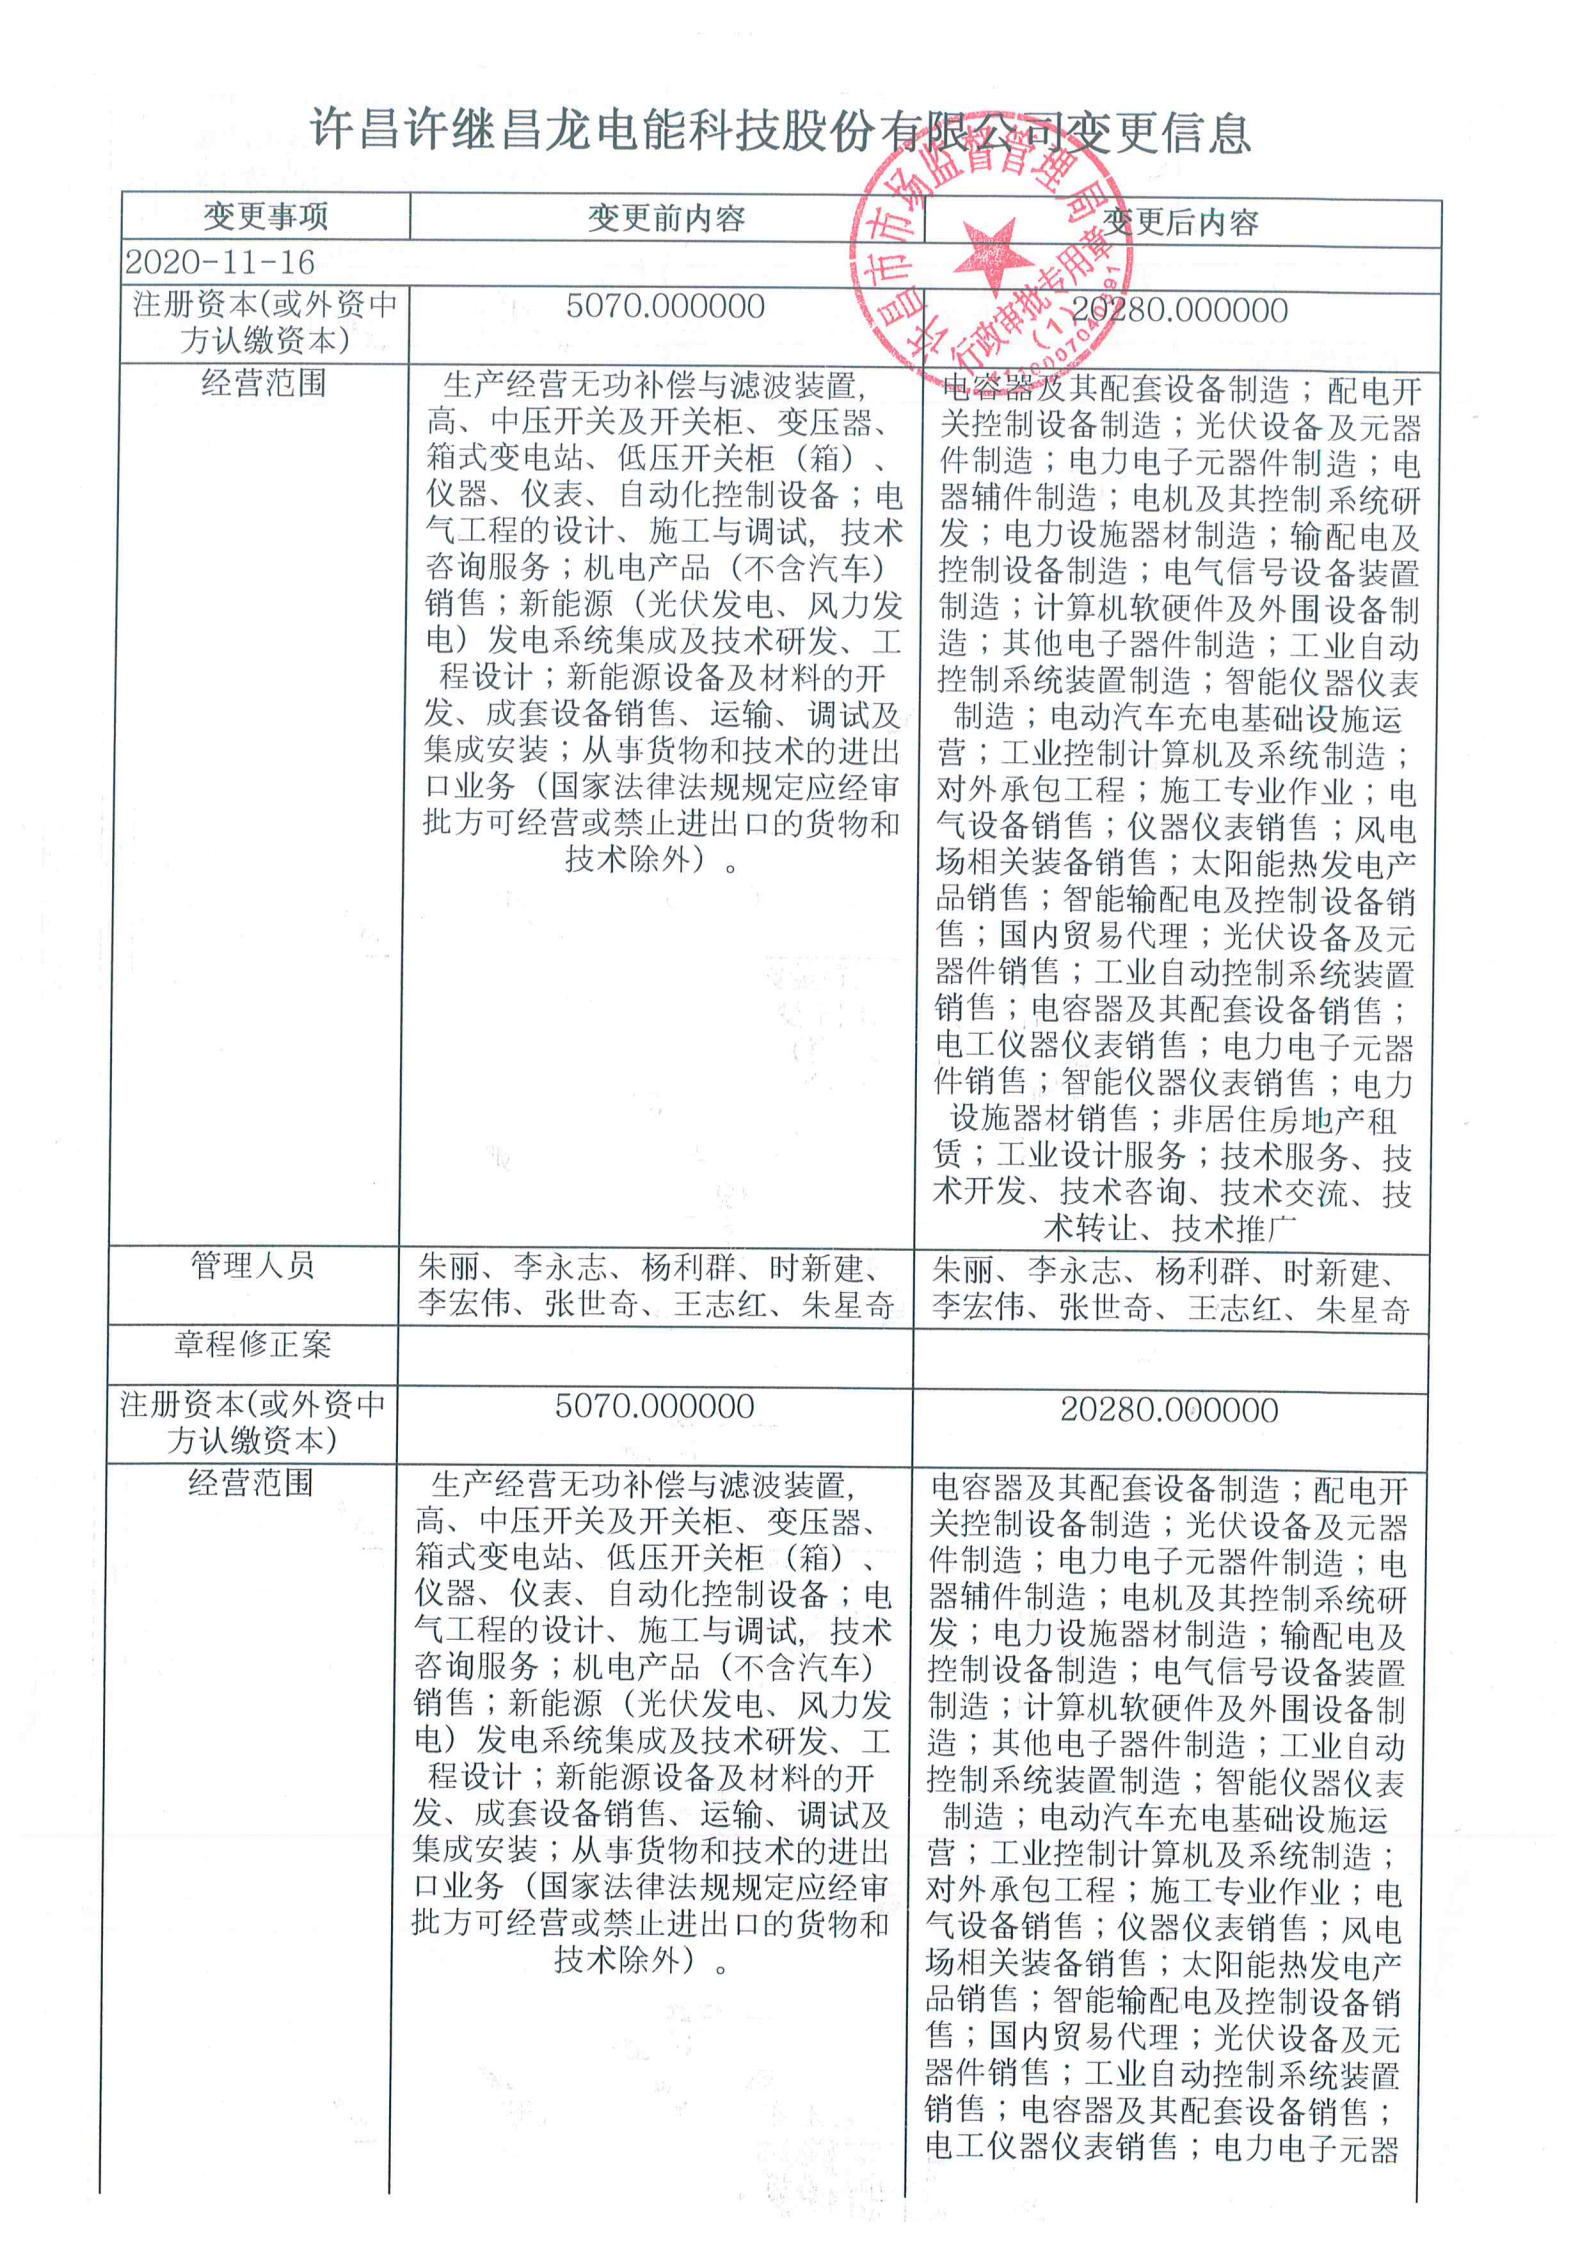 2020.11.16許昌許繼昌龍電能科技股份有限公司變更通知_頁面_1